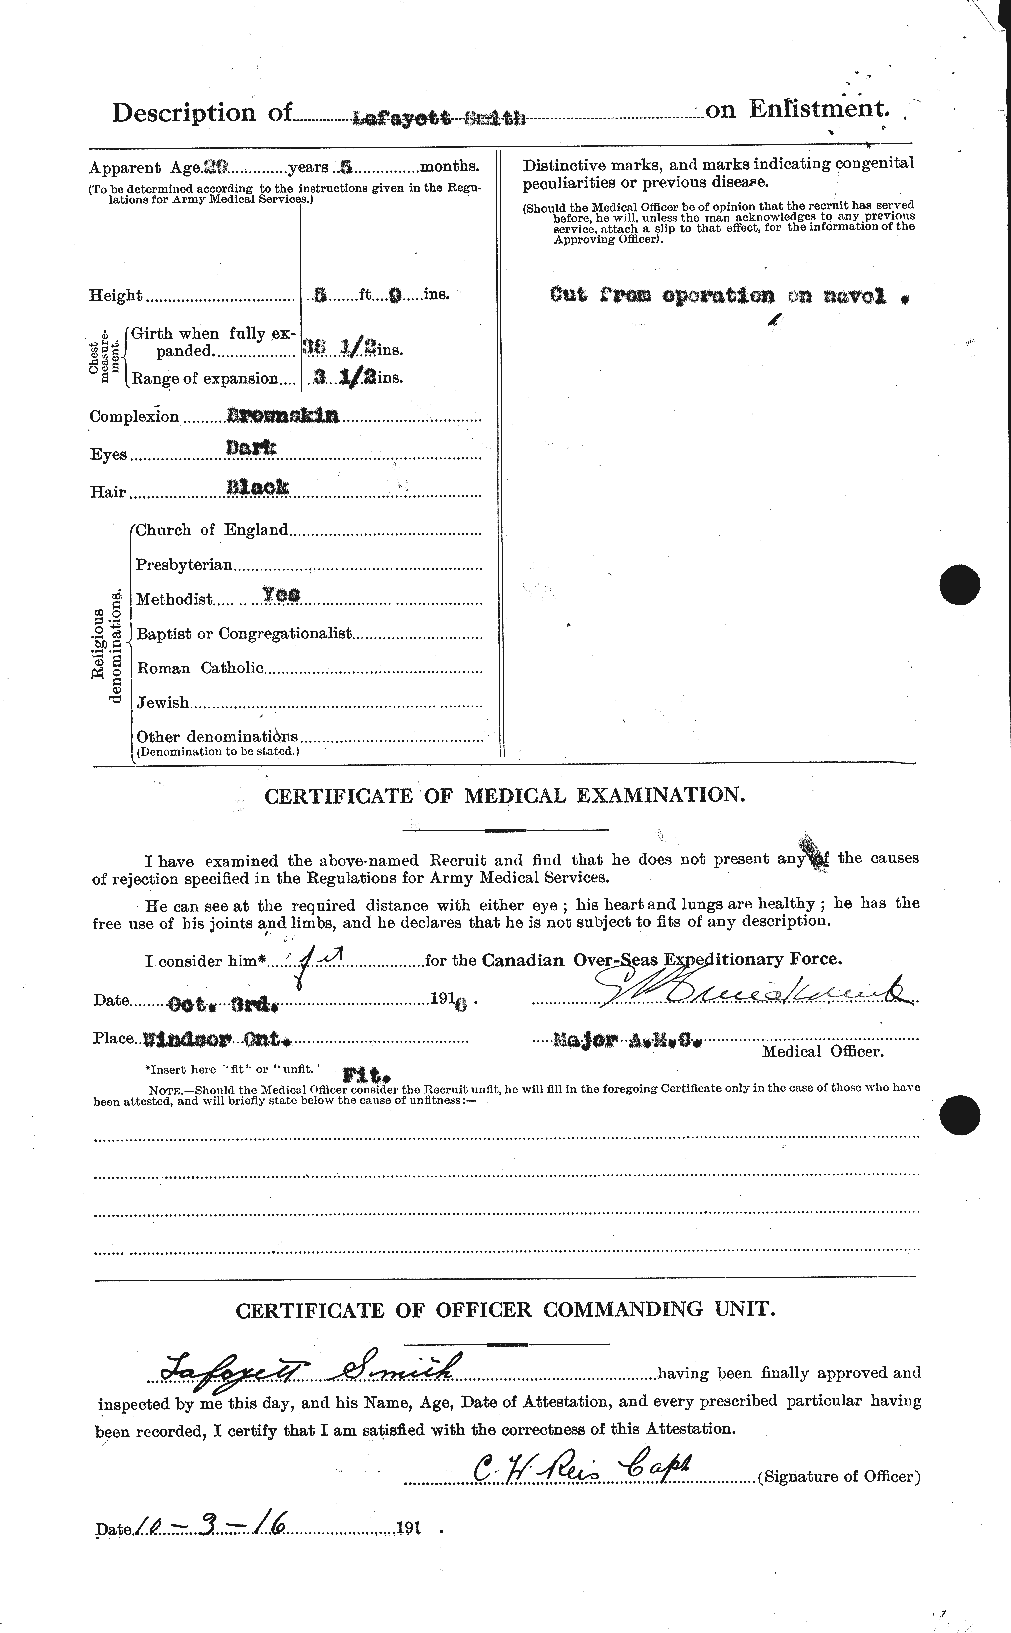 Dossiers du Personnel de la Première Guerre mondiale - CEC 106508b